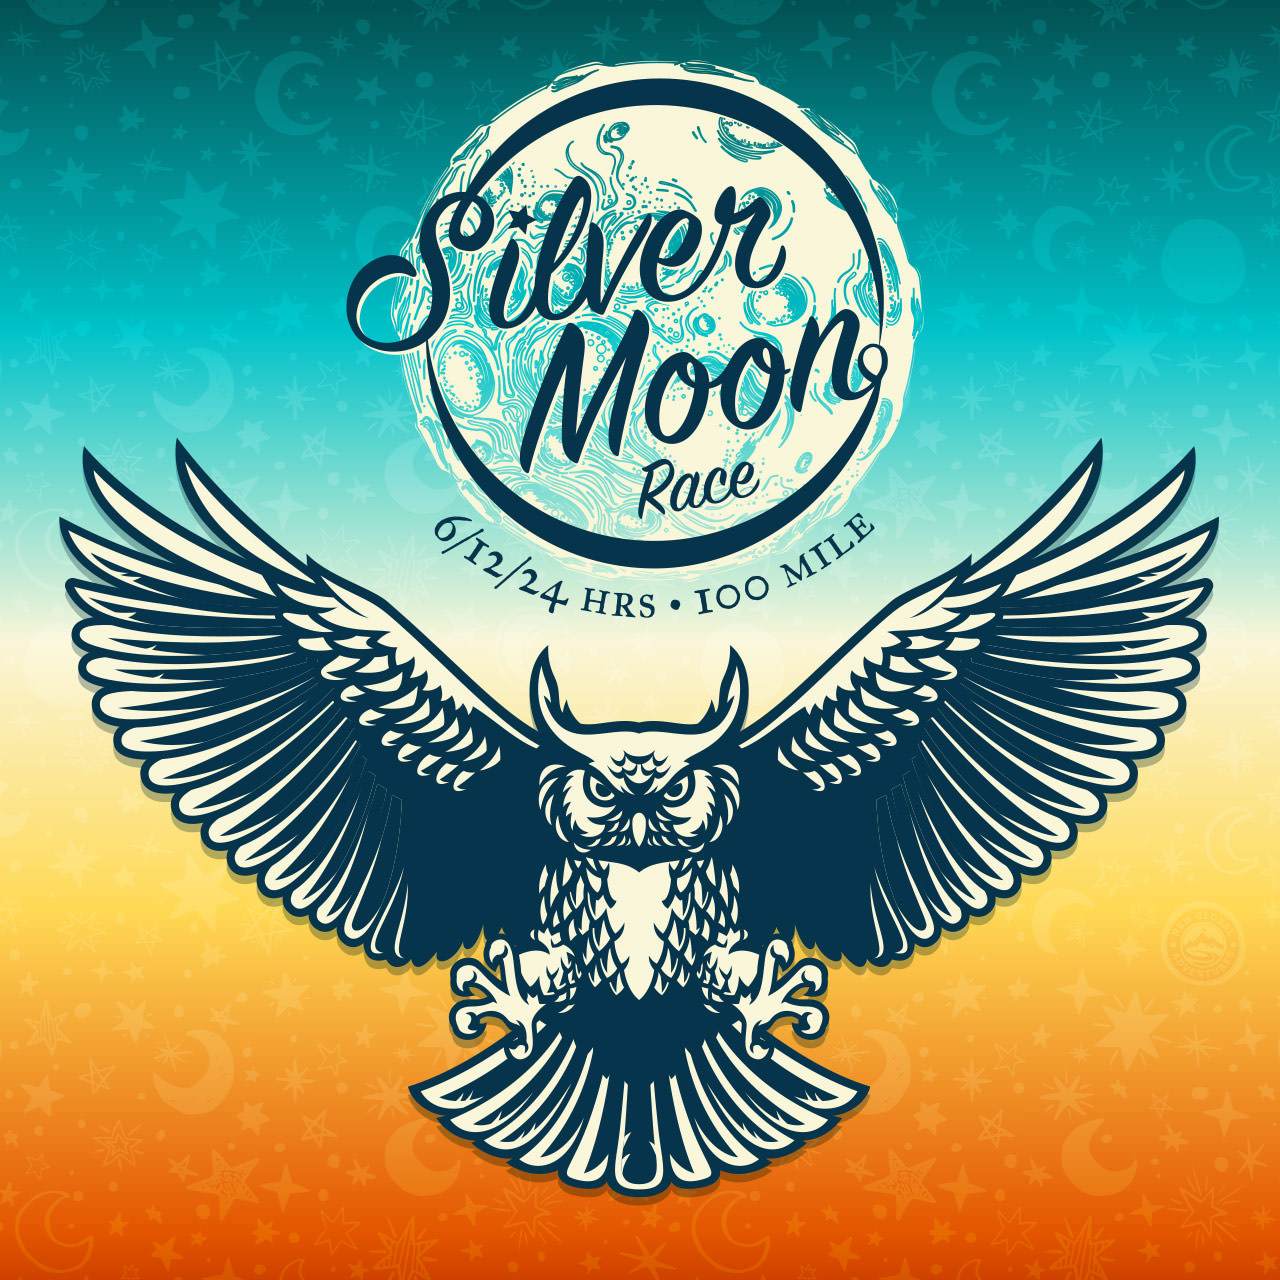 Silver Moon Race